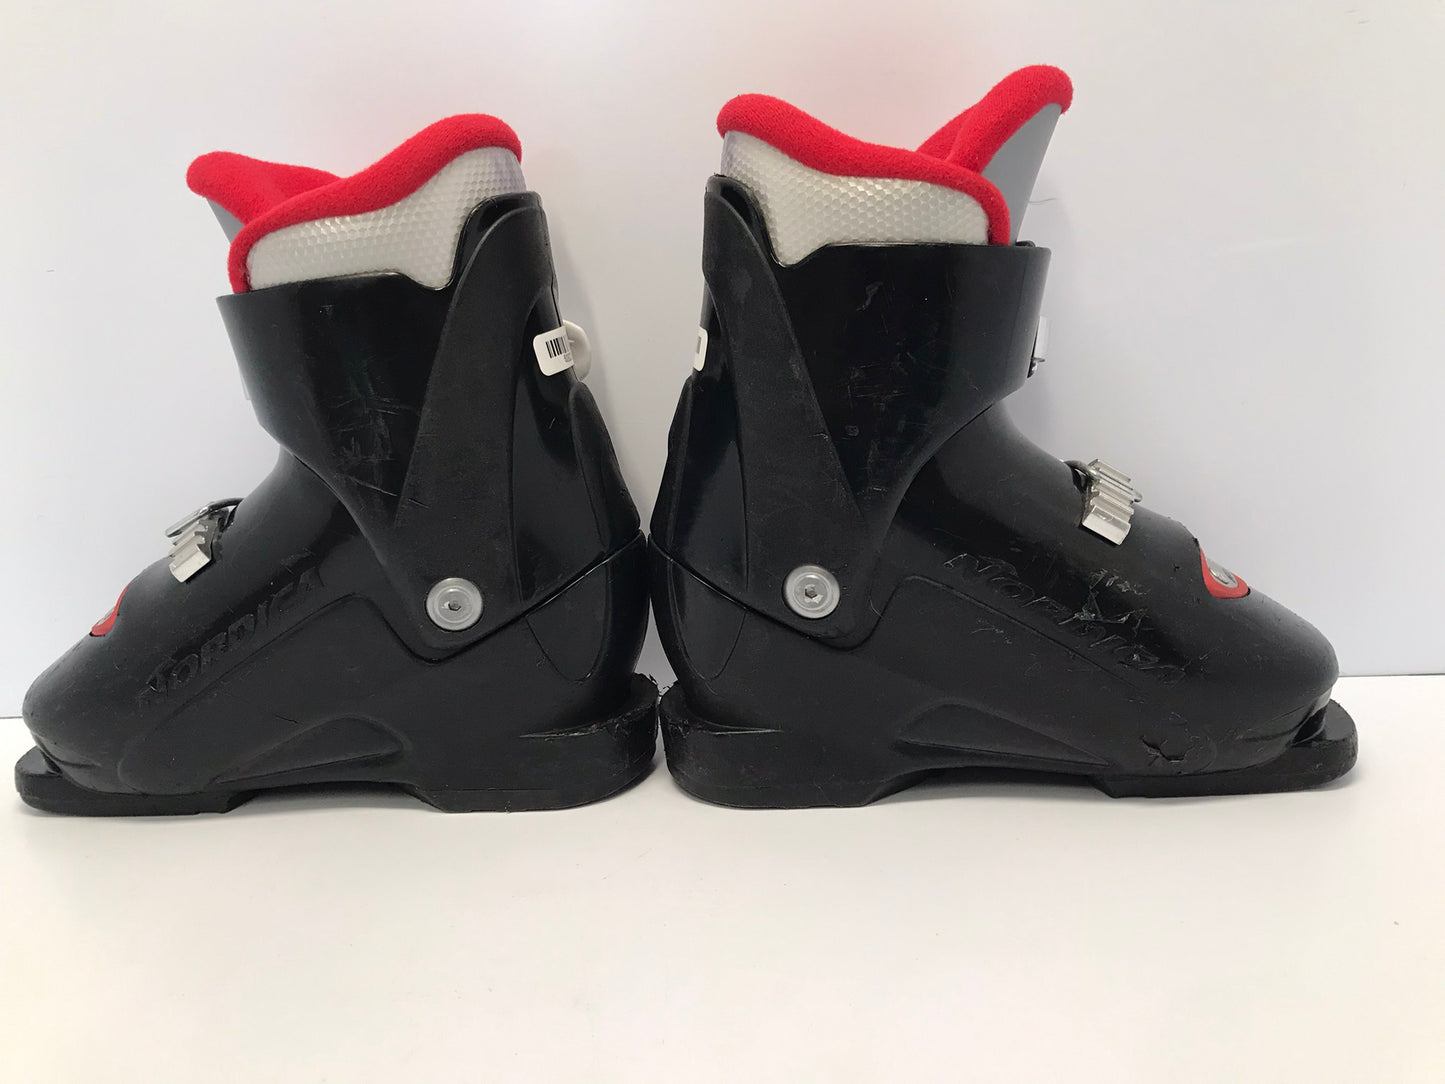 Ski Boots Mondo Size 18.5 Child Size 12.5 224mm Nordica Black Red Minor Wear